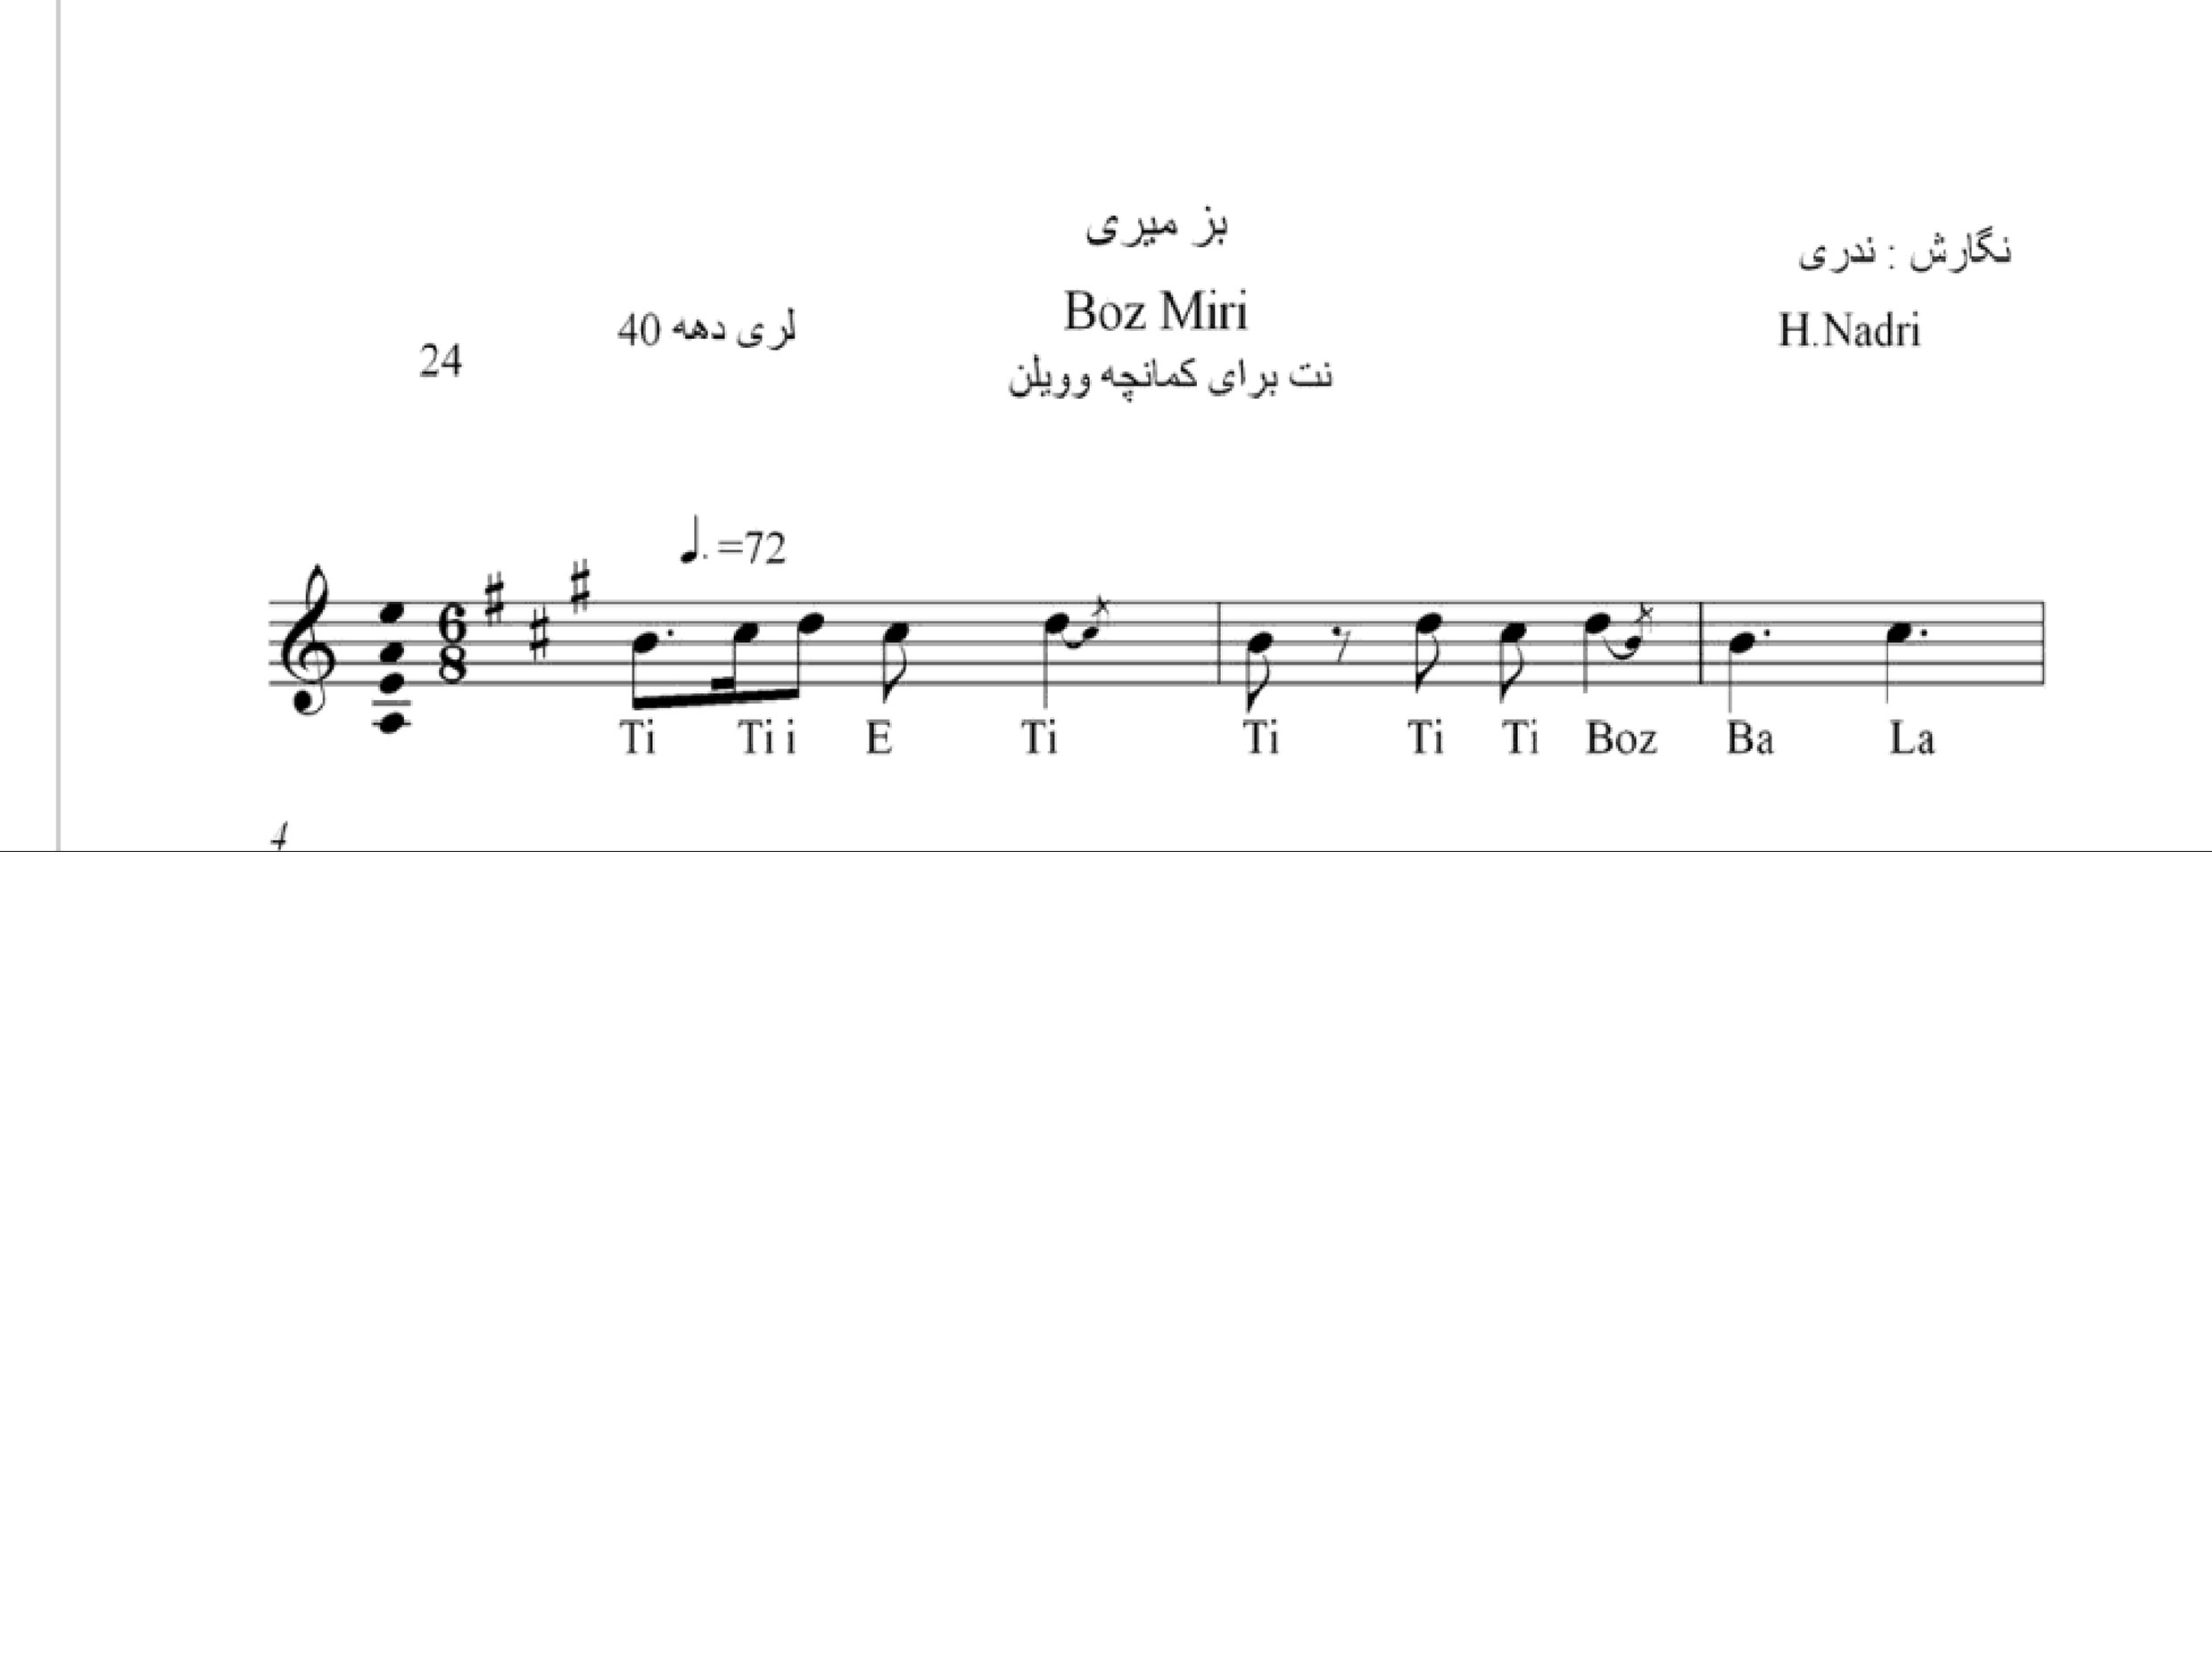 نت آهنگ بز میری محلی لری حجت اله ندری قابل اجرا با کمانچه و دیگر سازها